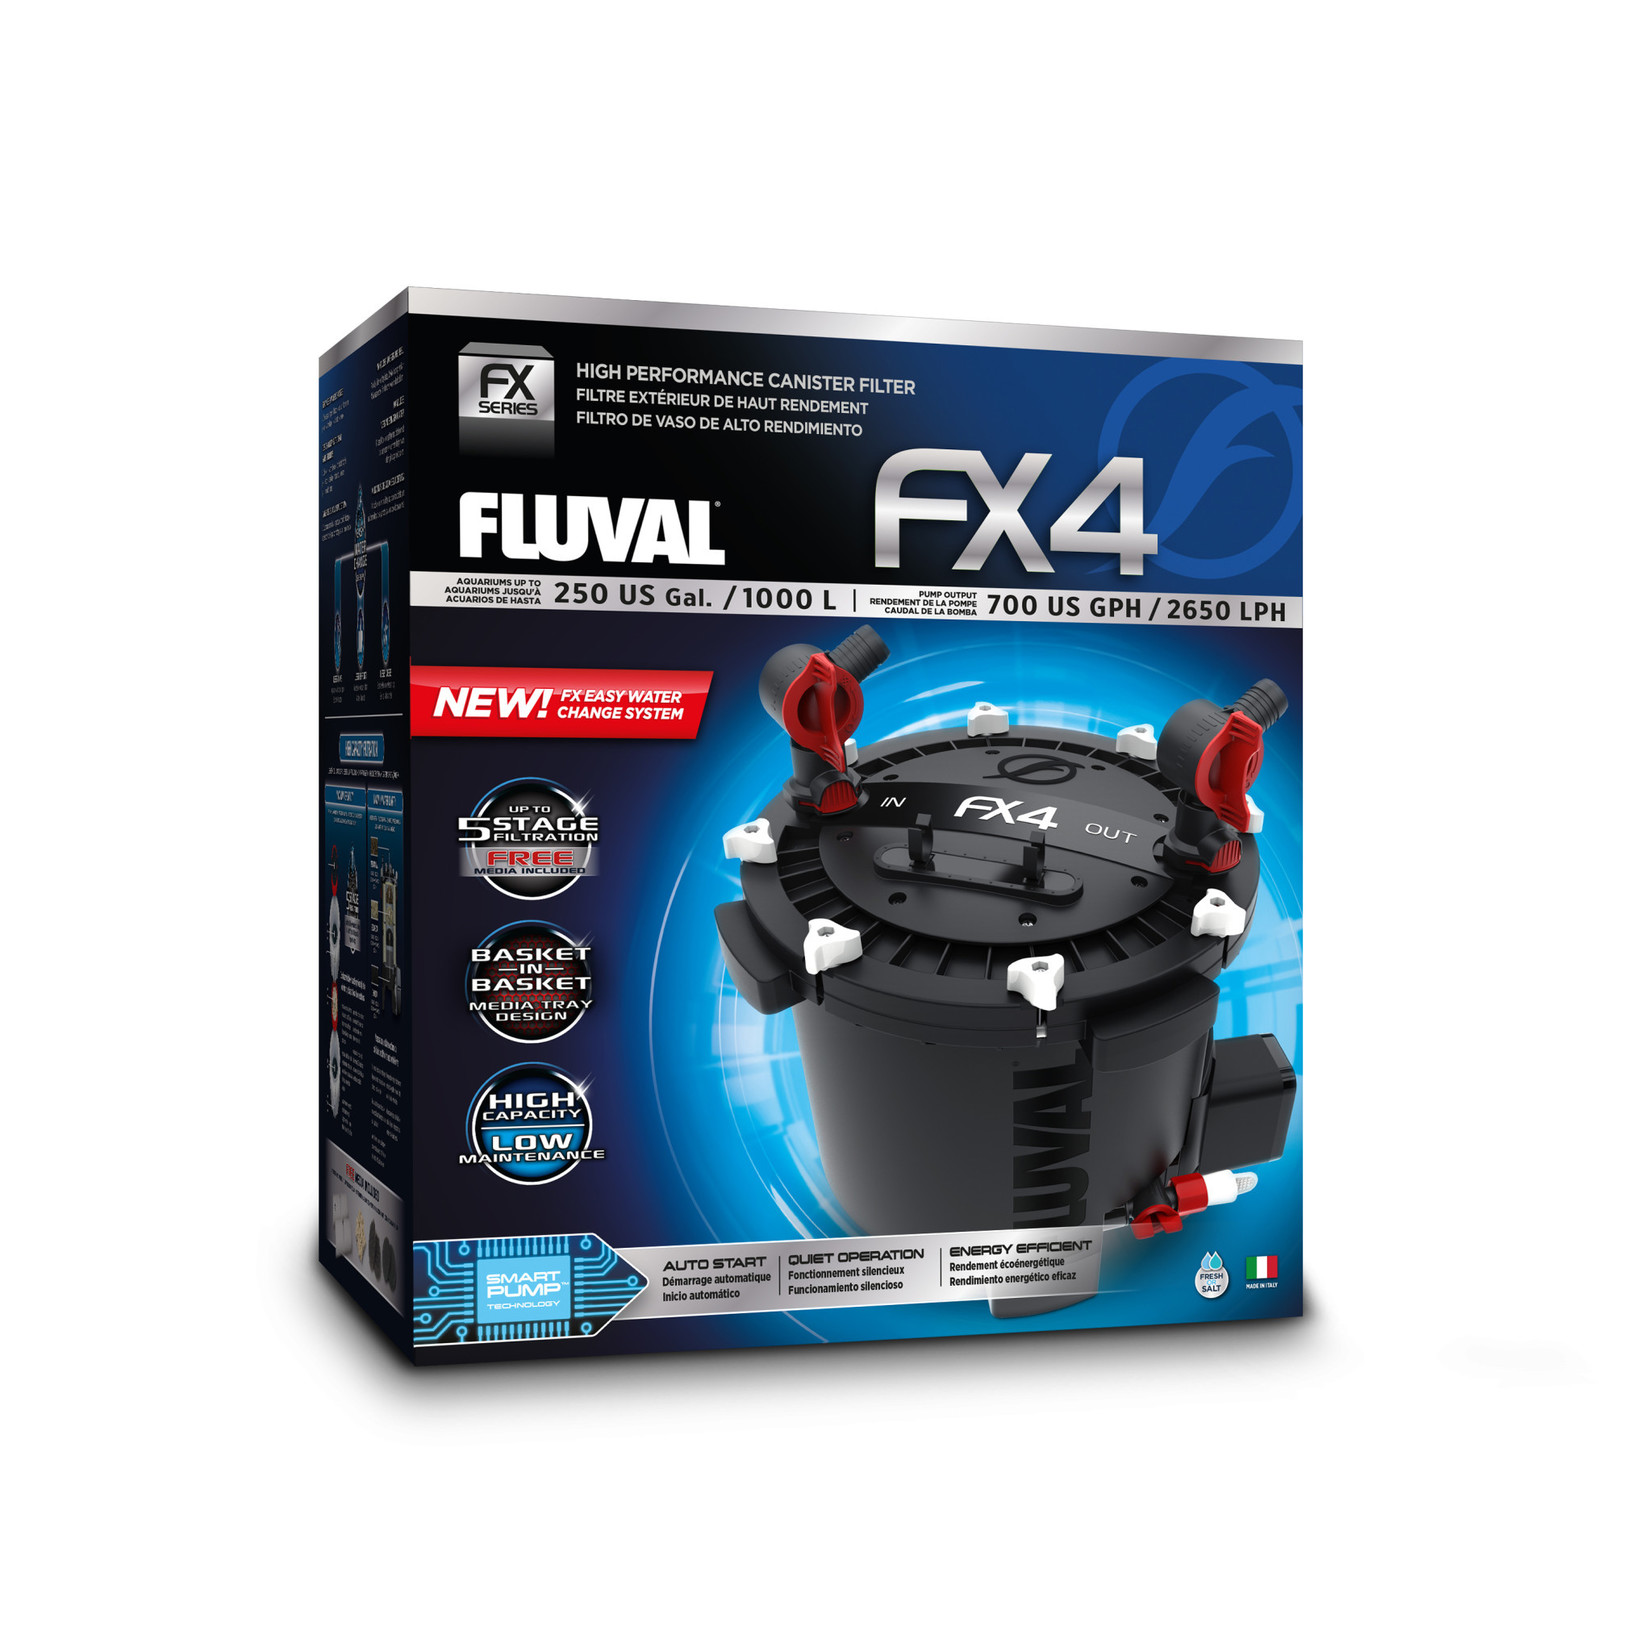 FLUVAL (P) Fluval FX4 High Performance Canister Filter